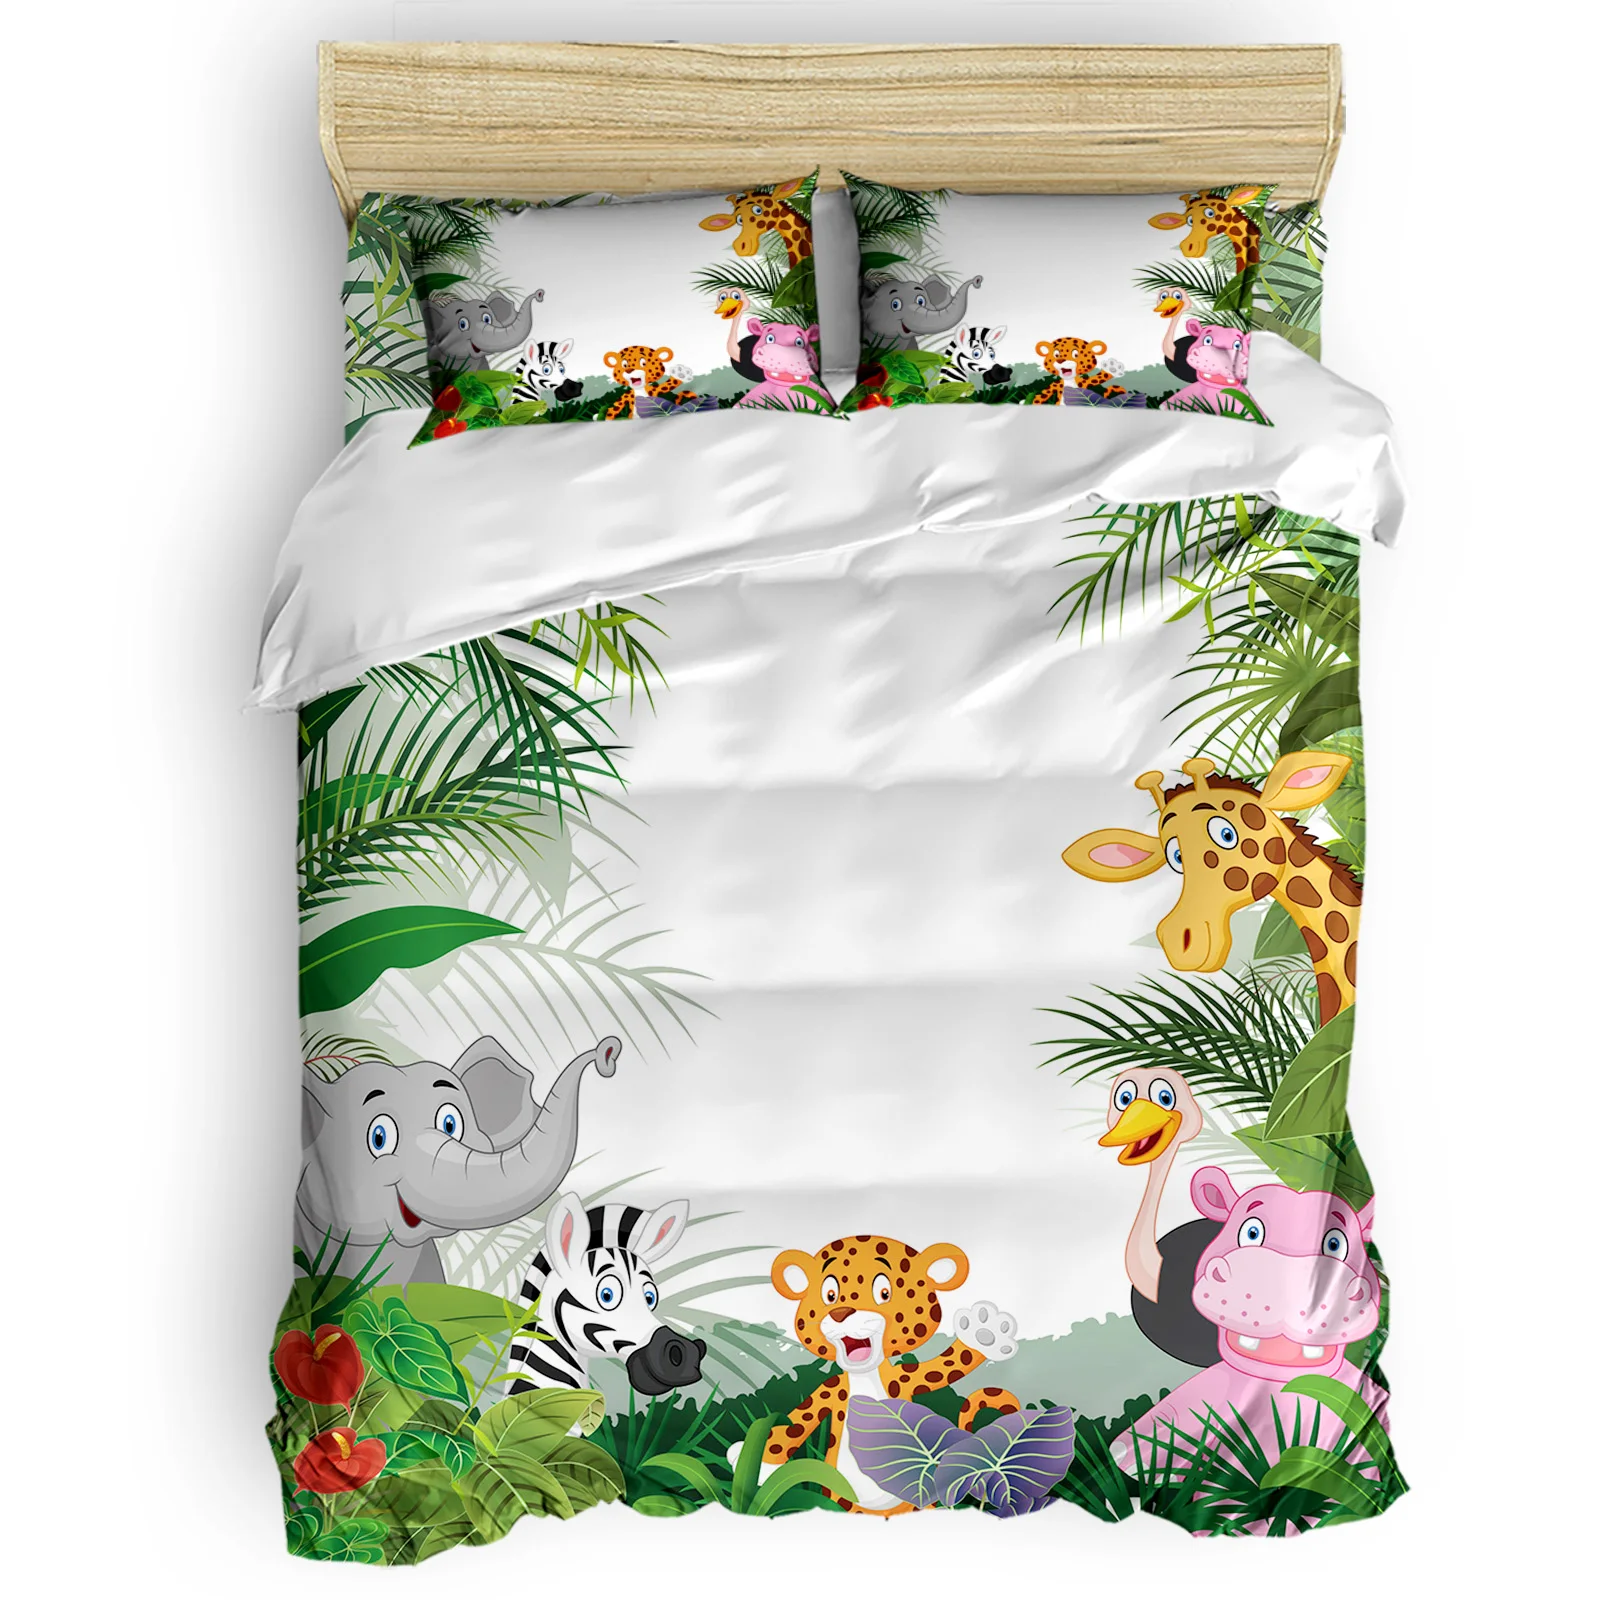 

New Jungle Forest Animal Cartoon Giraffe Lion Zebra Elephant Home Textile Duvet Cover Pillow Case Bed Sheet Kids Bedding 3Pcs